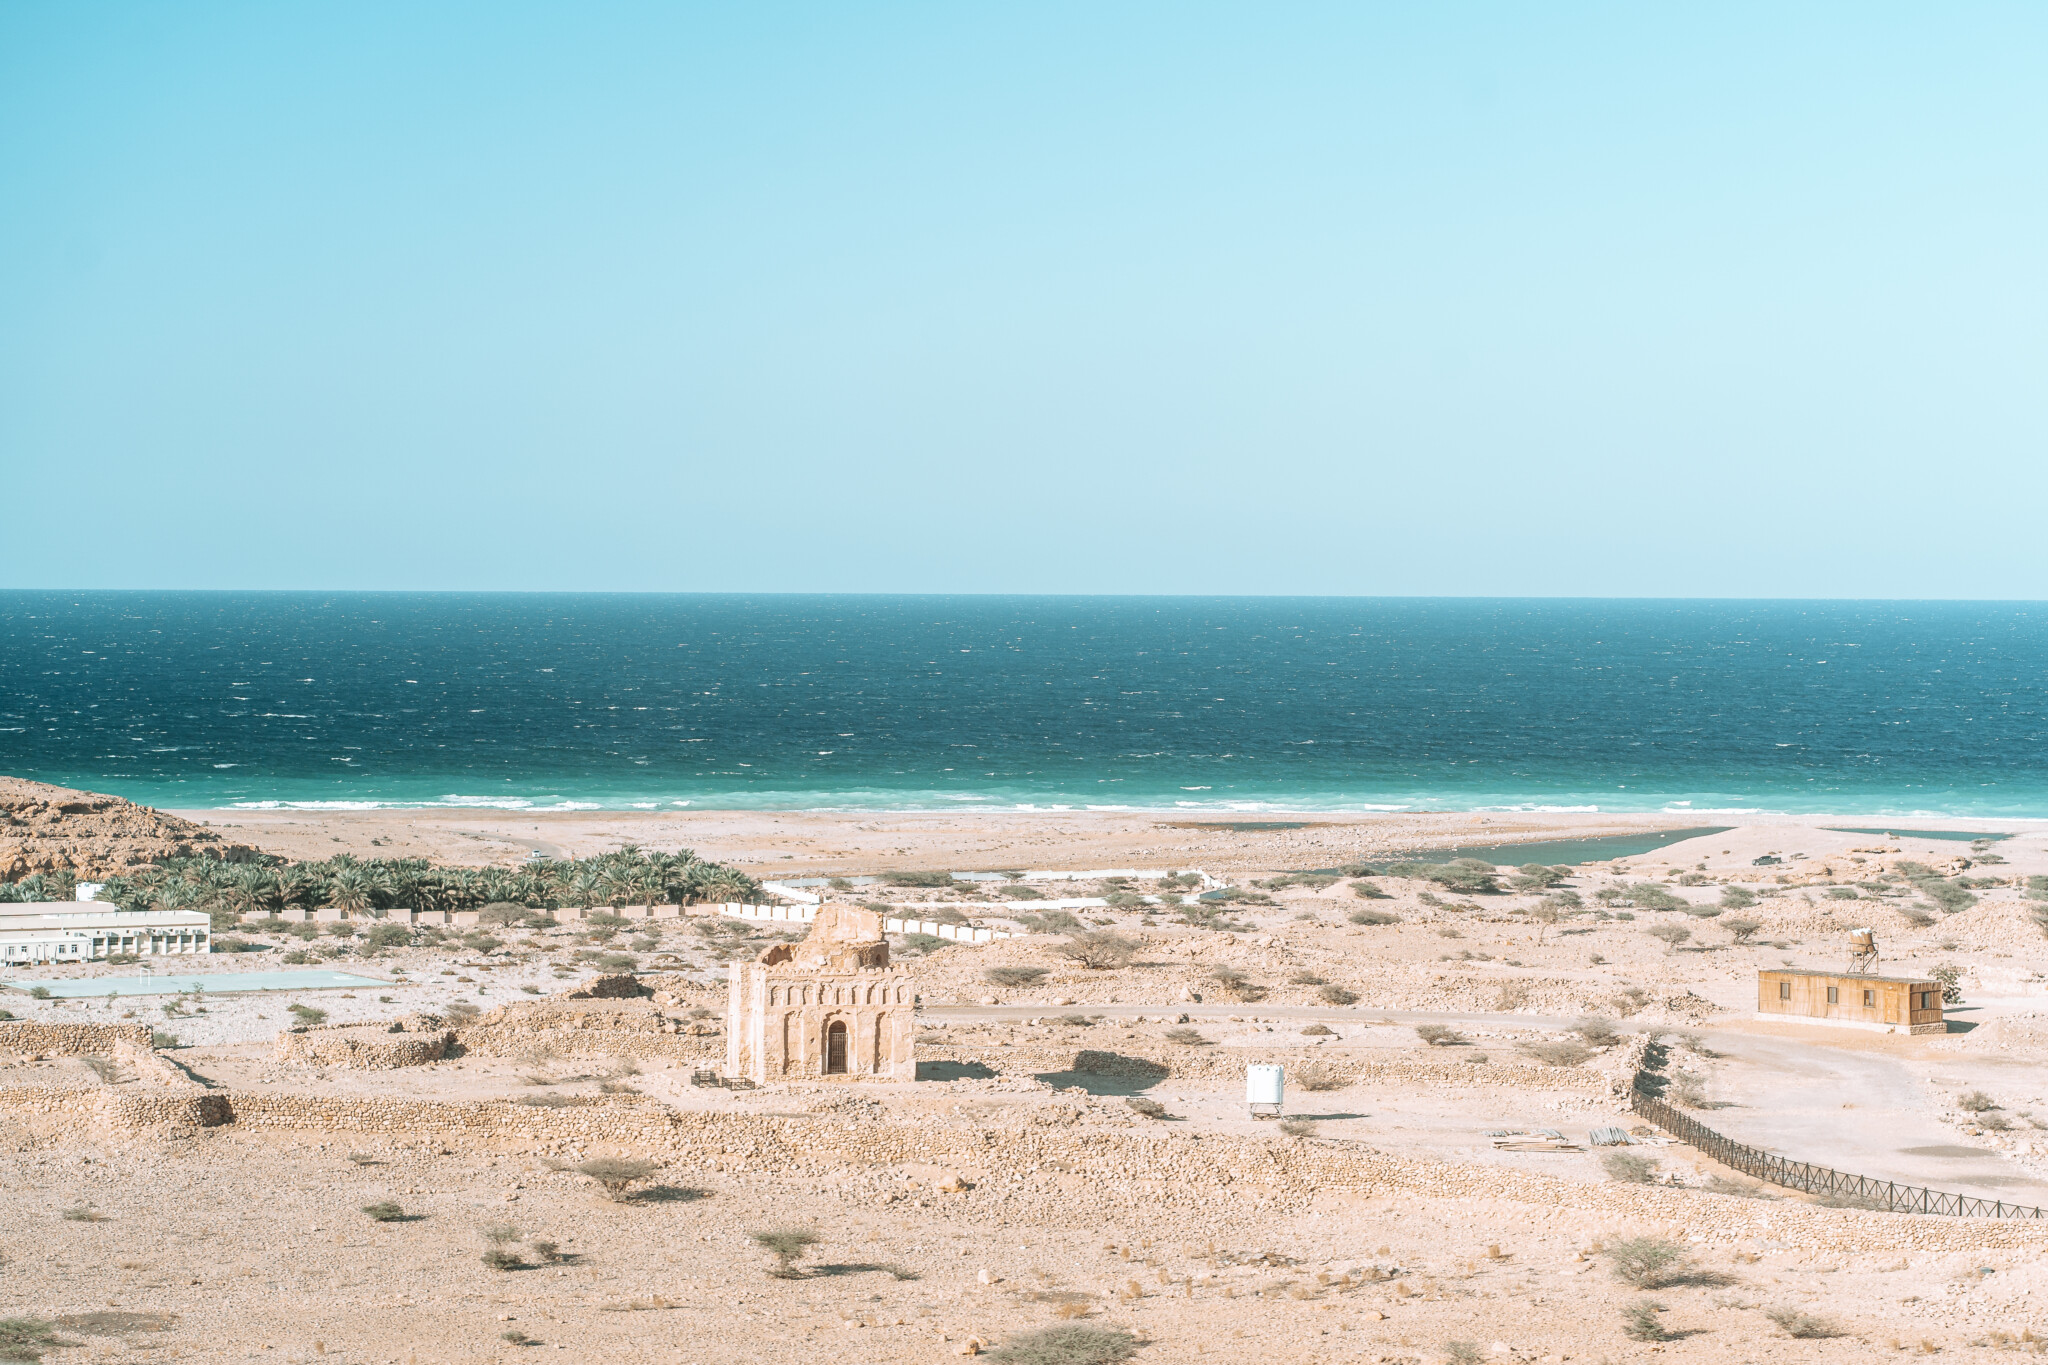 Qalhat im Oman gehört zum UNESCO-Weltkulturerbe